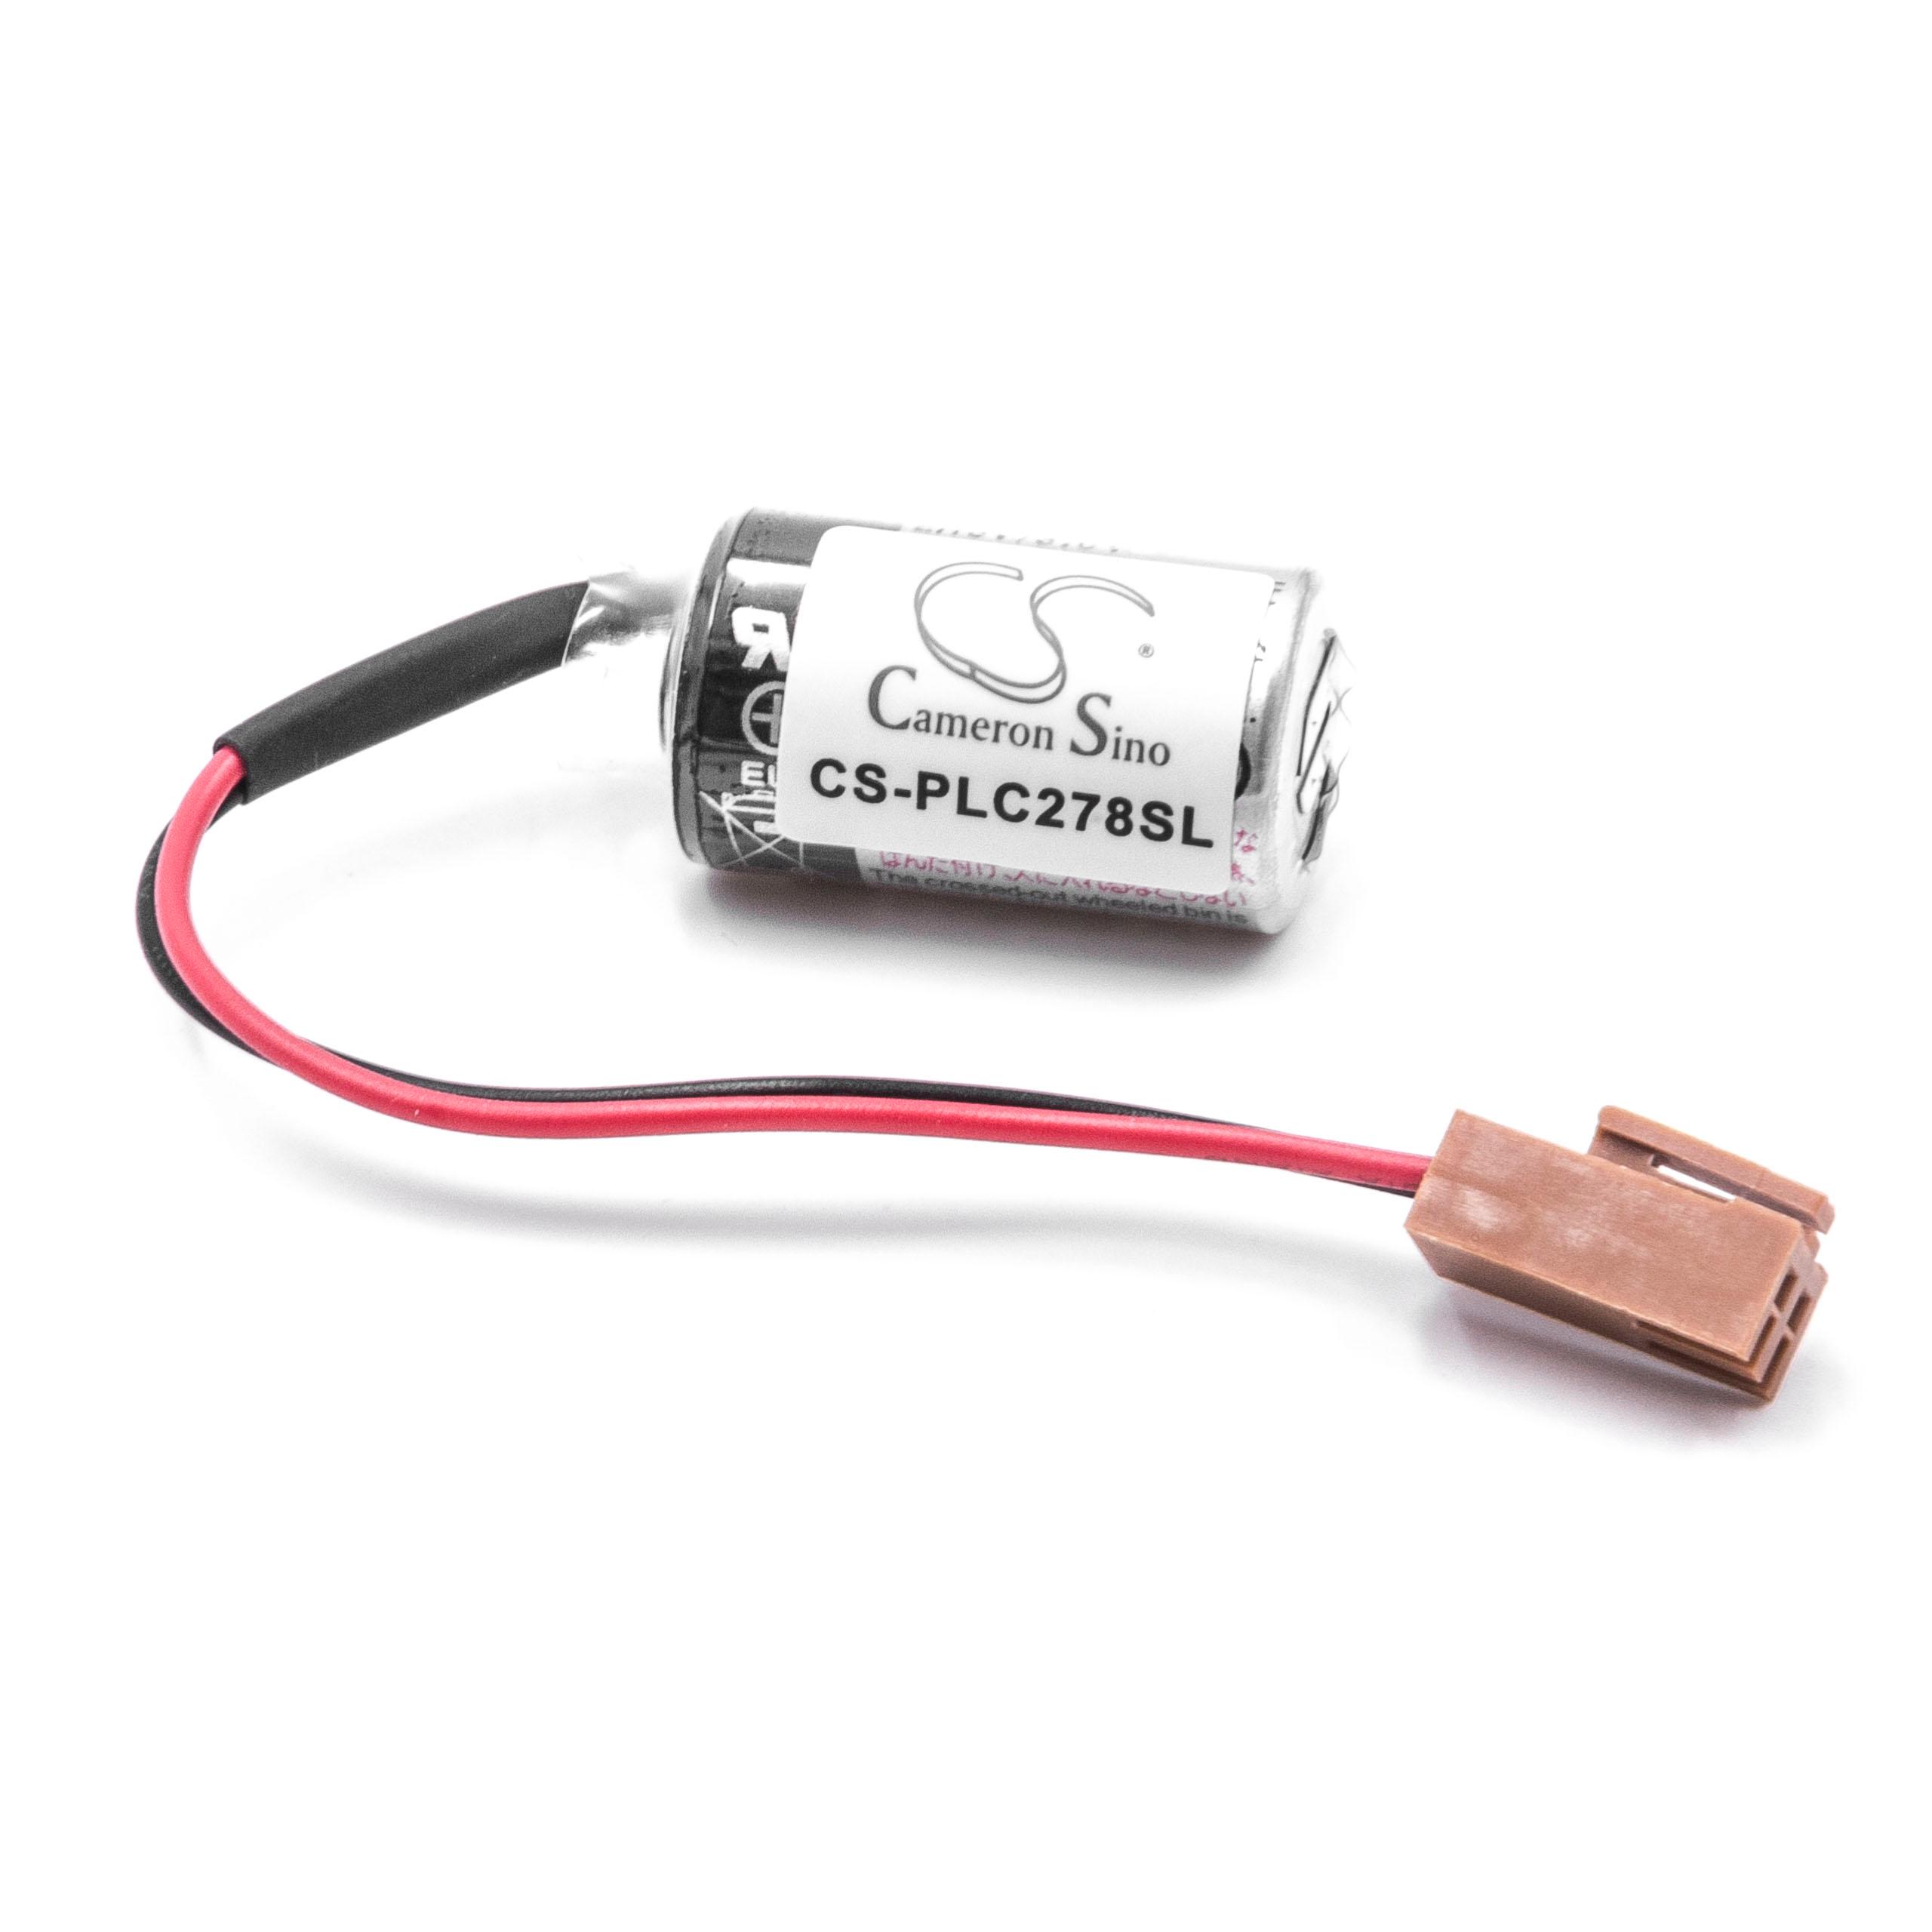 PLC Programmable Logic Controller-Batterie als Ersatz für FBT030A, FBT020A, ER3V/3.6V - 1000mAh 3,6V Li-MnO2